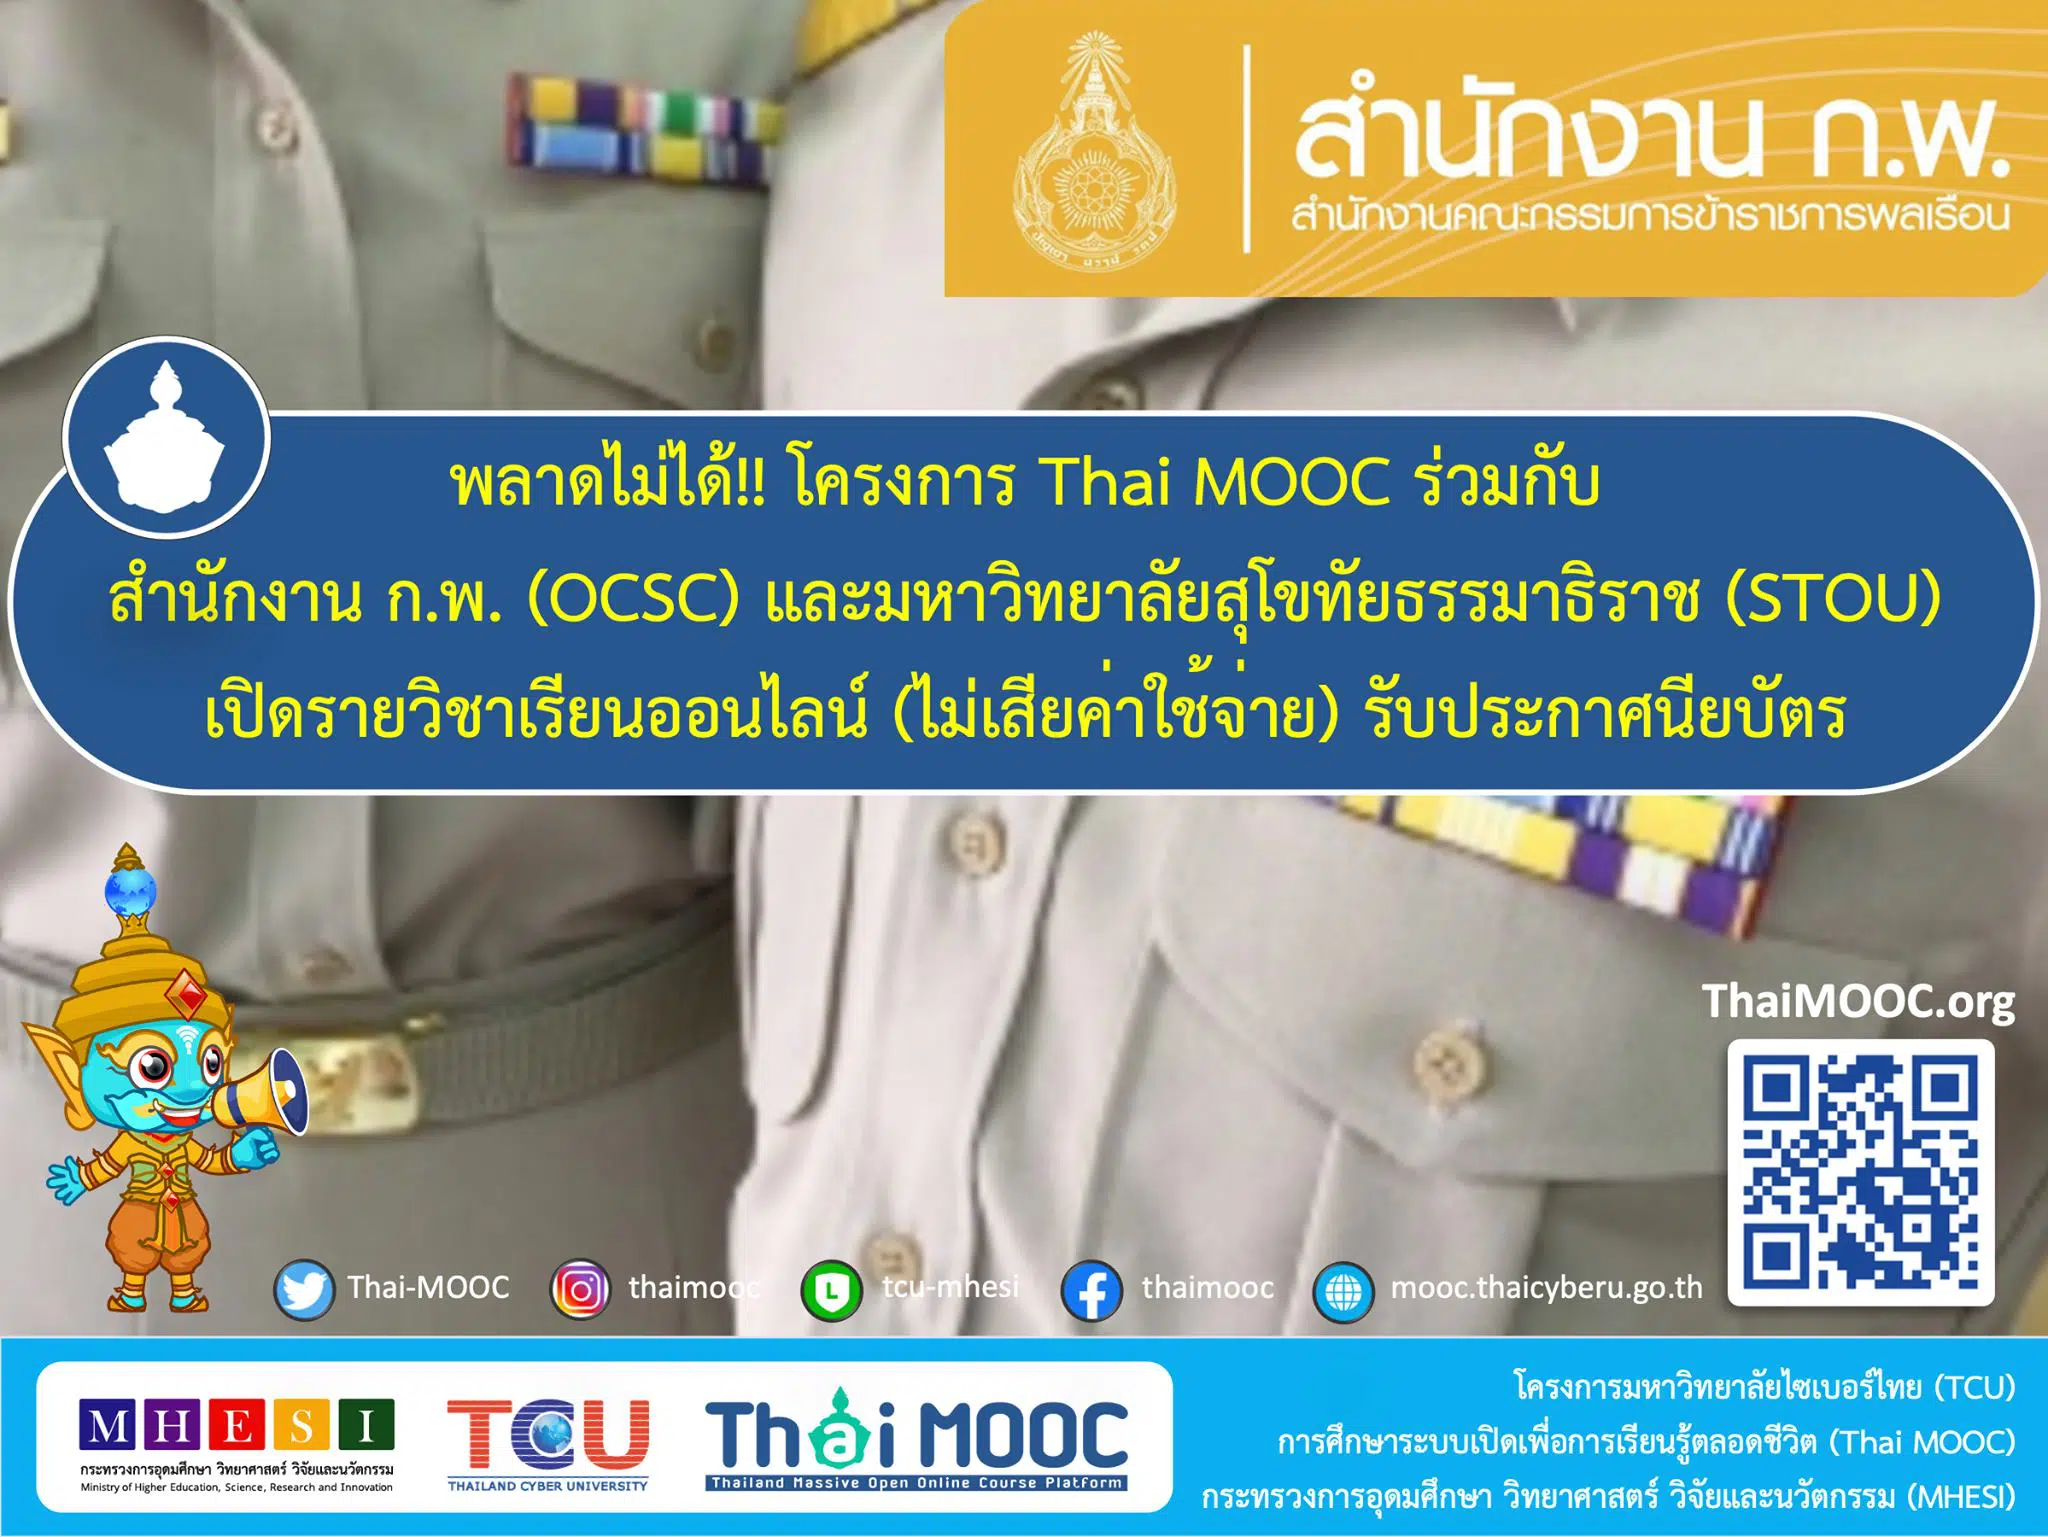 เรียนฟรี มีเกียรติบัตร ห้ามพลาด 15 หลักสูตรเรียนออนไลน์ฟรี โดย Thai MOOC ร่วมกับ สำนักงาน ก.พ. และ มสธ. 